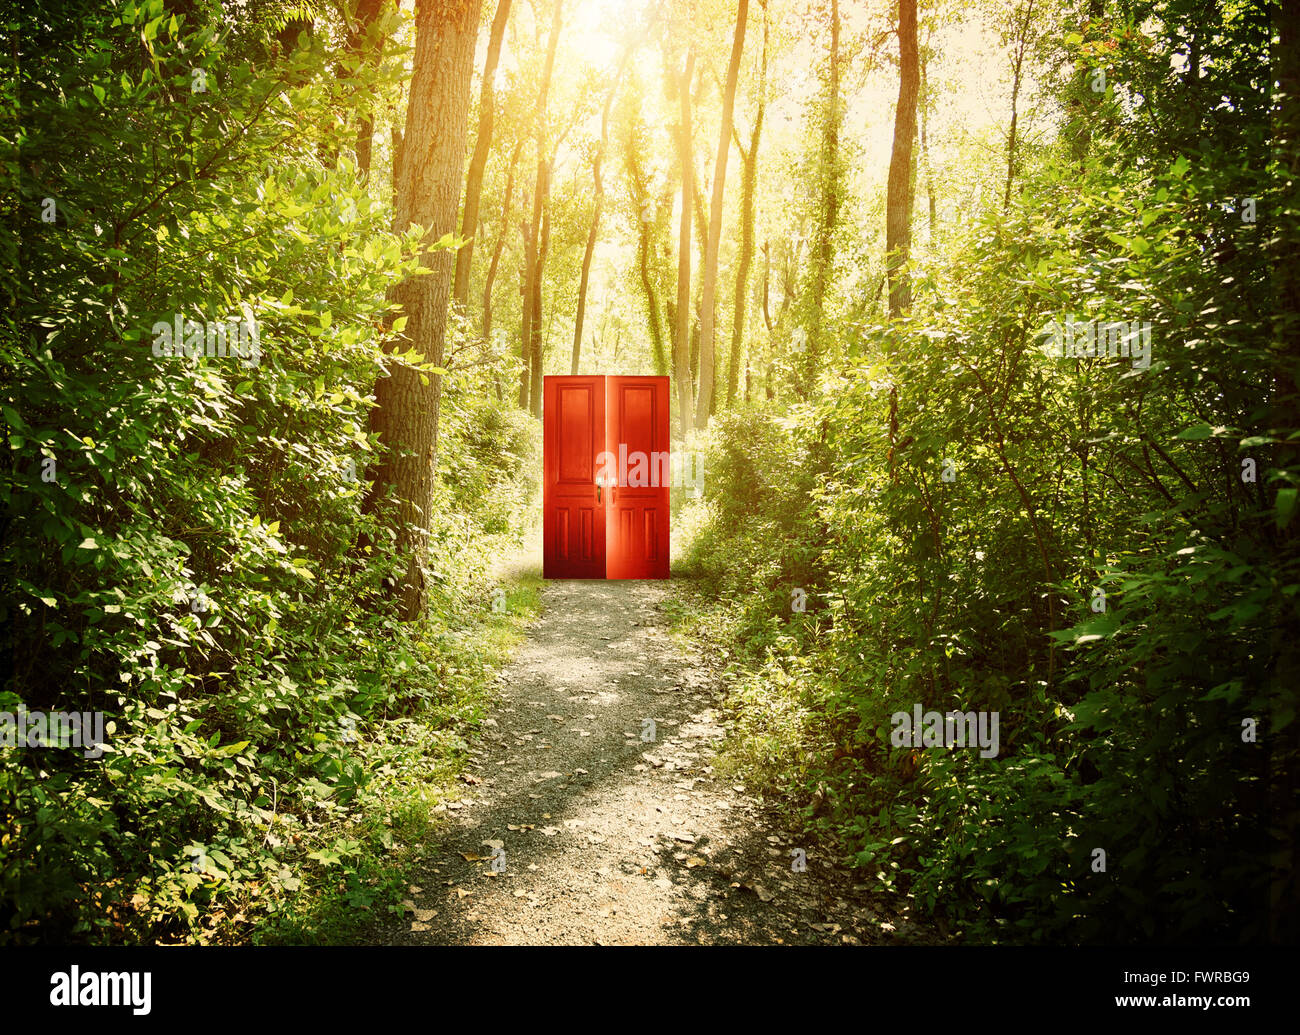 Eine rote Tür ist auf einem Trail im Wald mit Bäumen für eine konzeptionelle Konzept über glauben, Freiheit oder Freiheit Konzept. Stockfoto